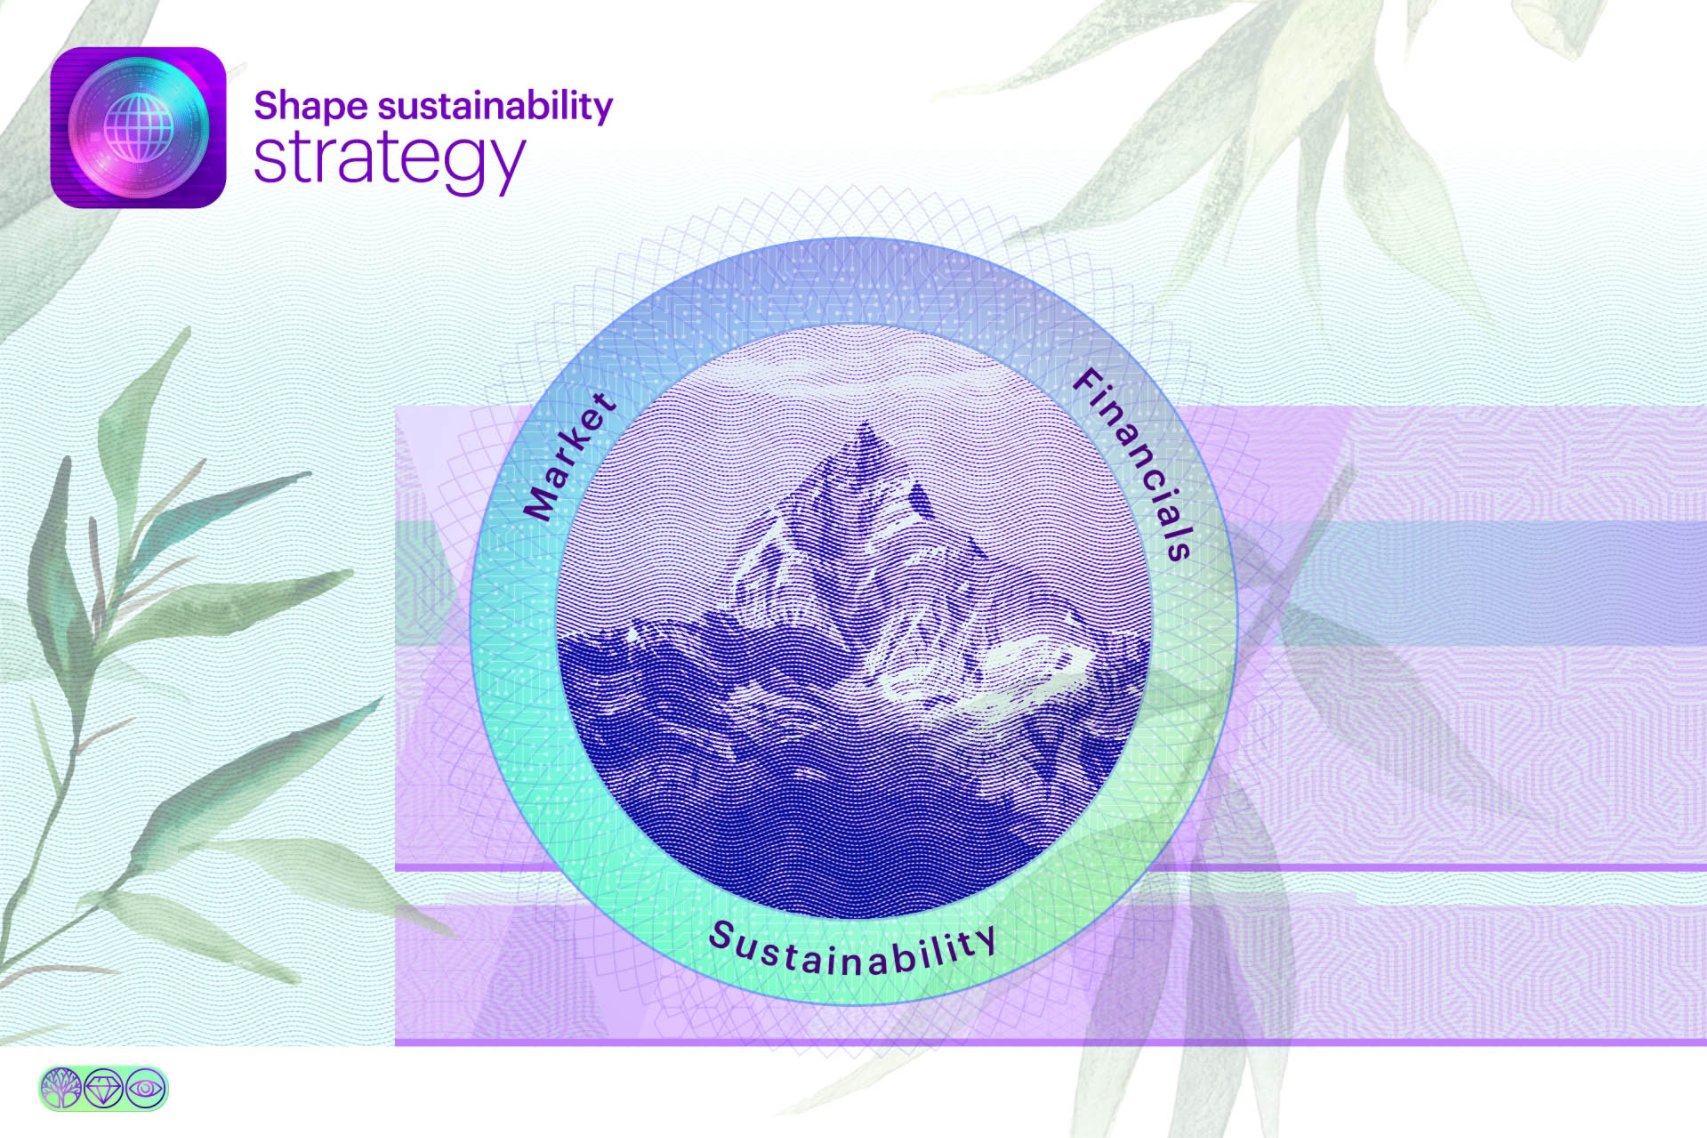 Shape sustainability strategy